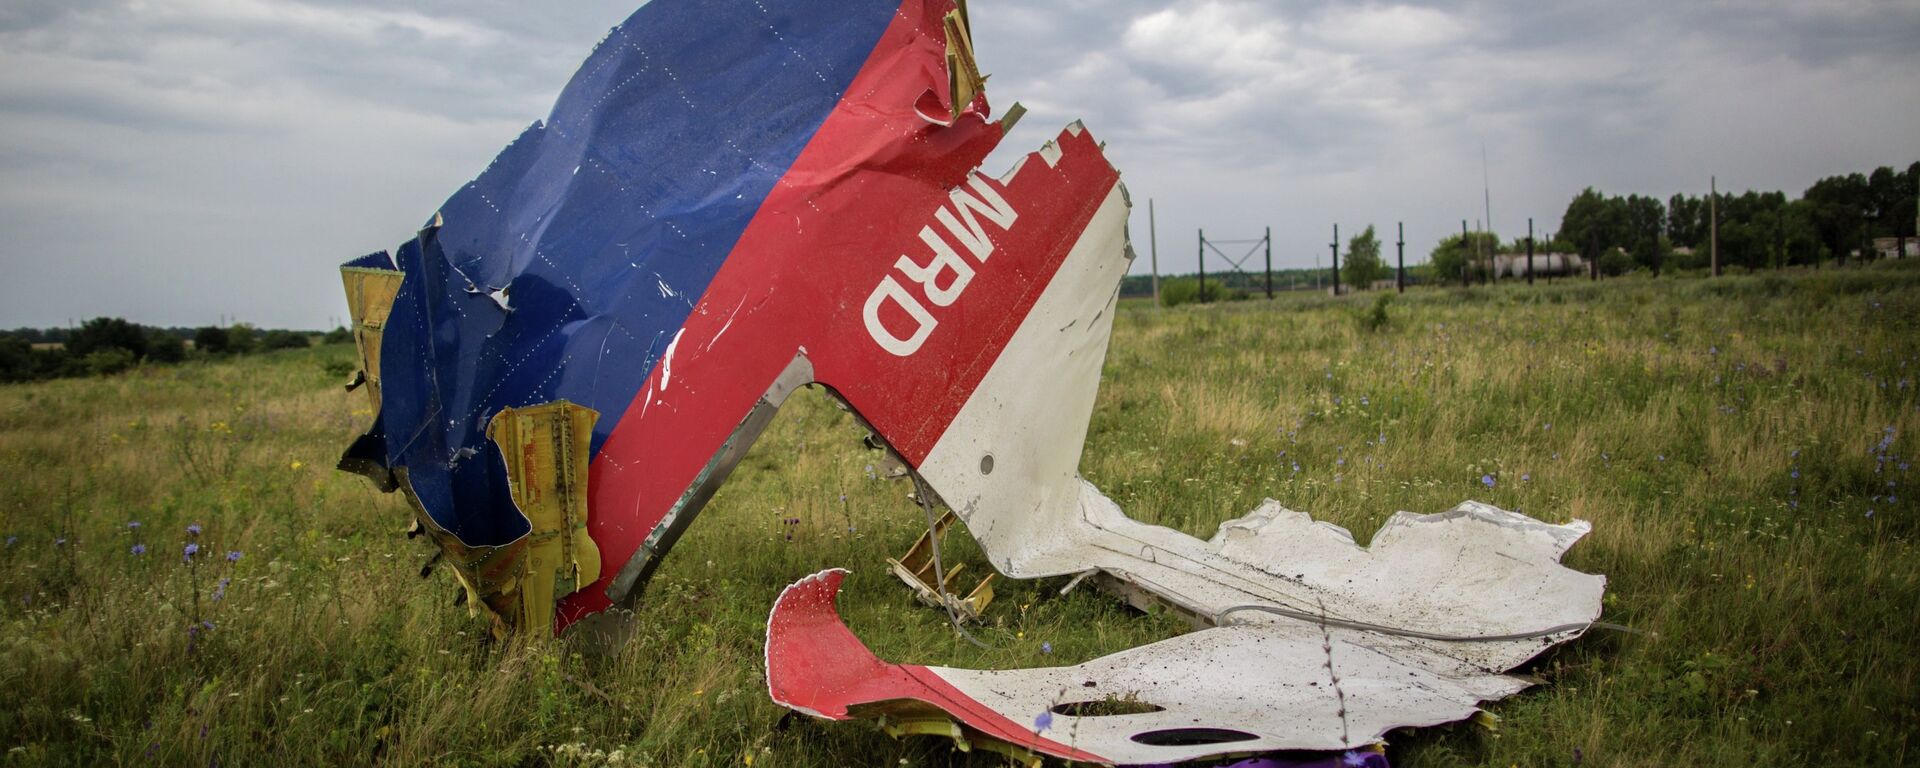 Los restos del Boeing 777 malasio derribado en Donbás - Sputnik Mundo, 1920, 31.05.2018